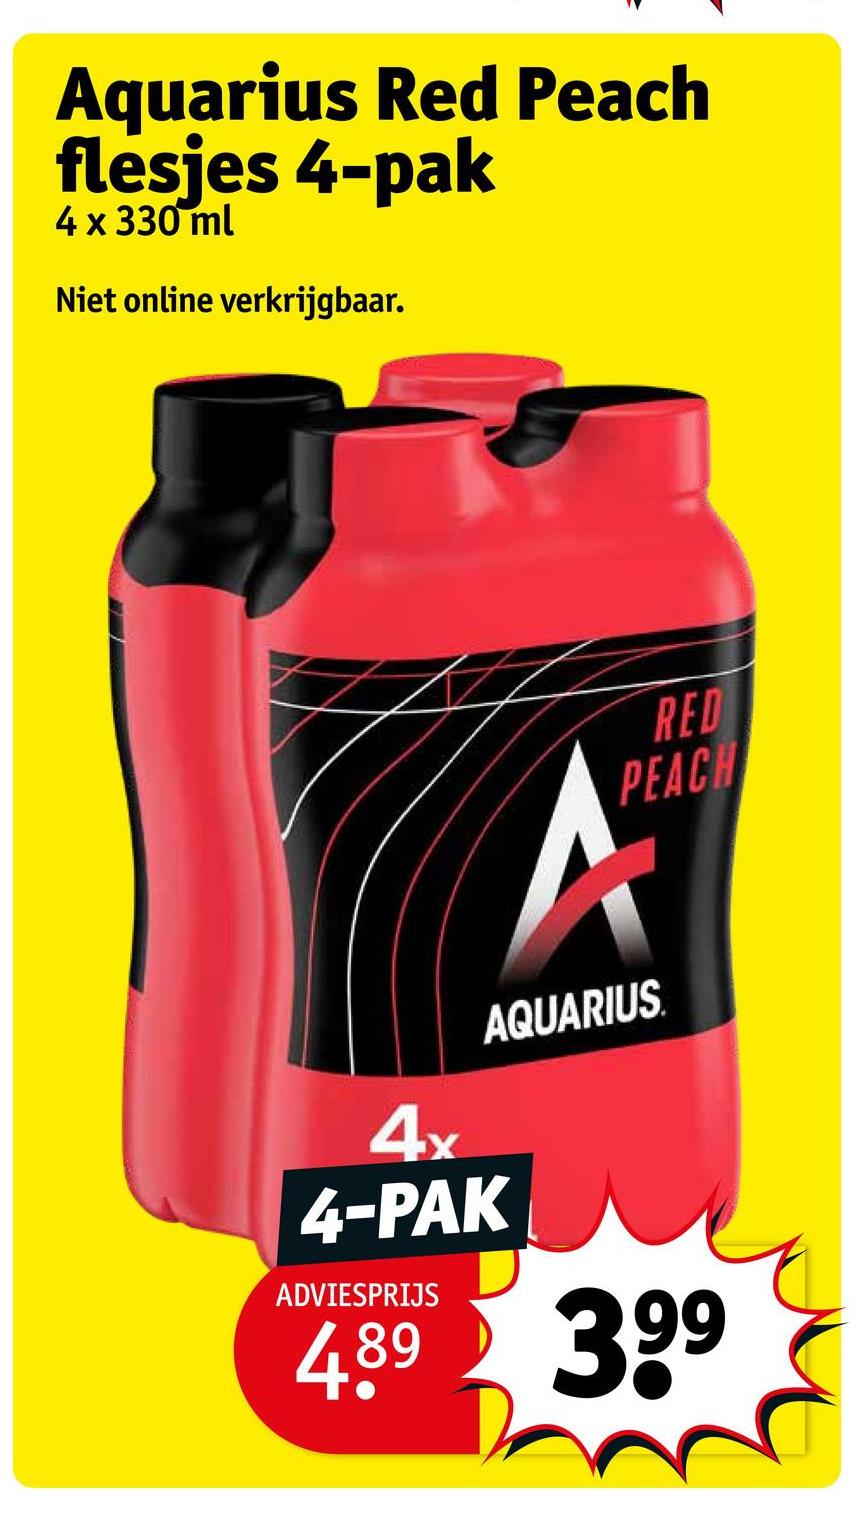 Aquarius Red Peach
flesjes 4-pak
4 x 330 ml
Niet online verkrijgbaar.
4x
4-PAK
ADVIESPRIJS
A
RED
PEACH
AQUARIUS
4.89 399